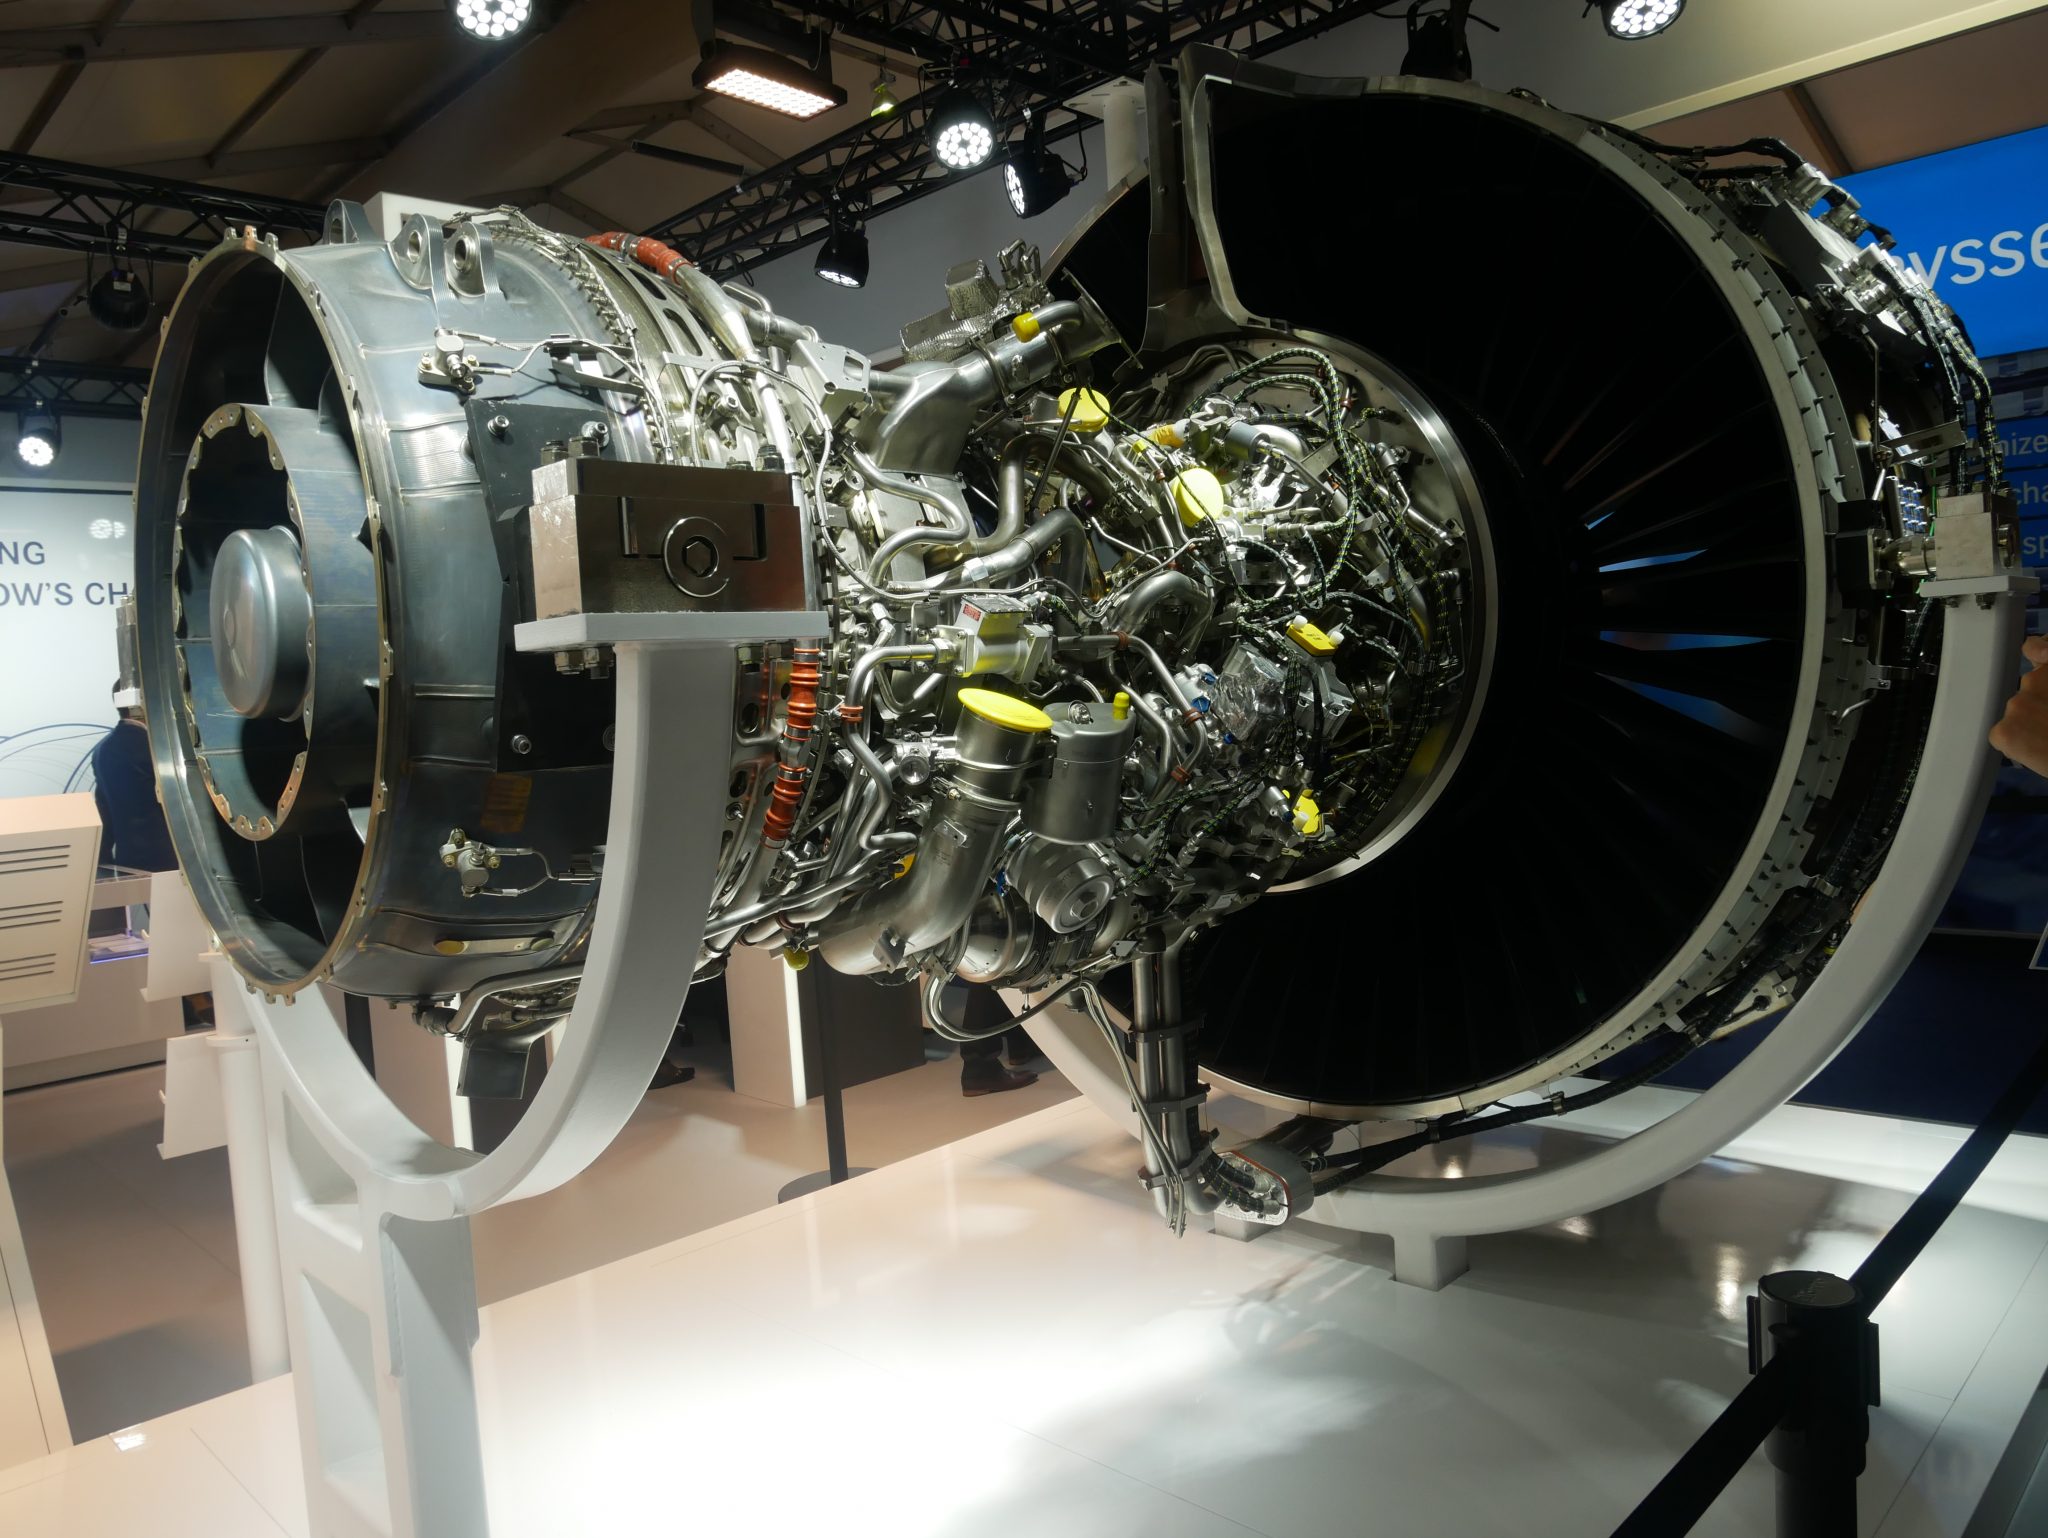 普惠公司齿轮传动涡扇发动机PW1000G aircraft engine, complete with additively manufactured components. Photo via Tia Vialva.